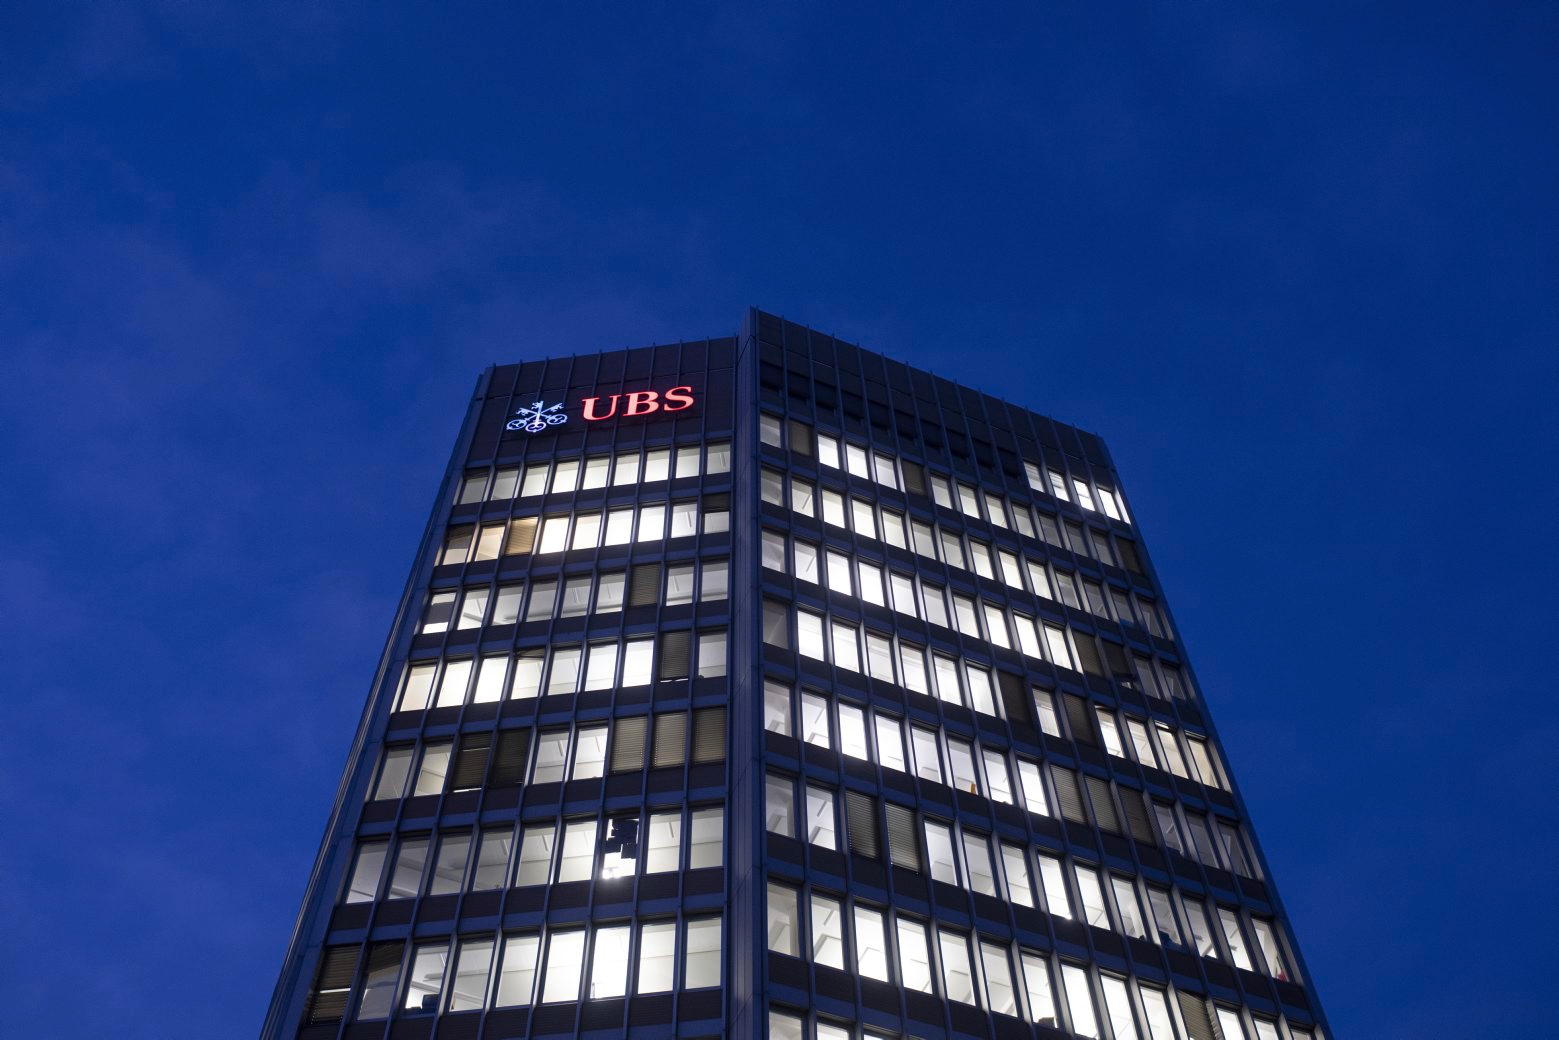 ARCHIVBILD ZU DEN QUARTALSZAHLEN DER UBS --- Das Logo der Bank UBS leuchtet am Montag, 21. Januar 2019 in Zuerich. (KEYSTONE/Ennio Leanza) SCHWEIZ UBS QUARTALSZAHLEN